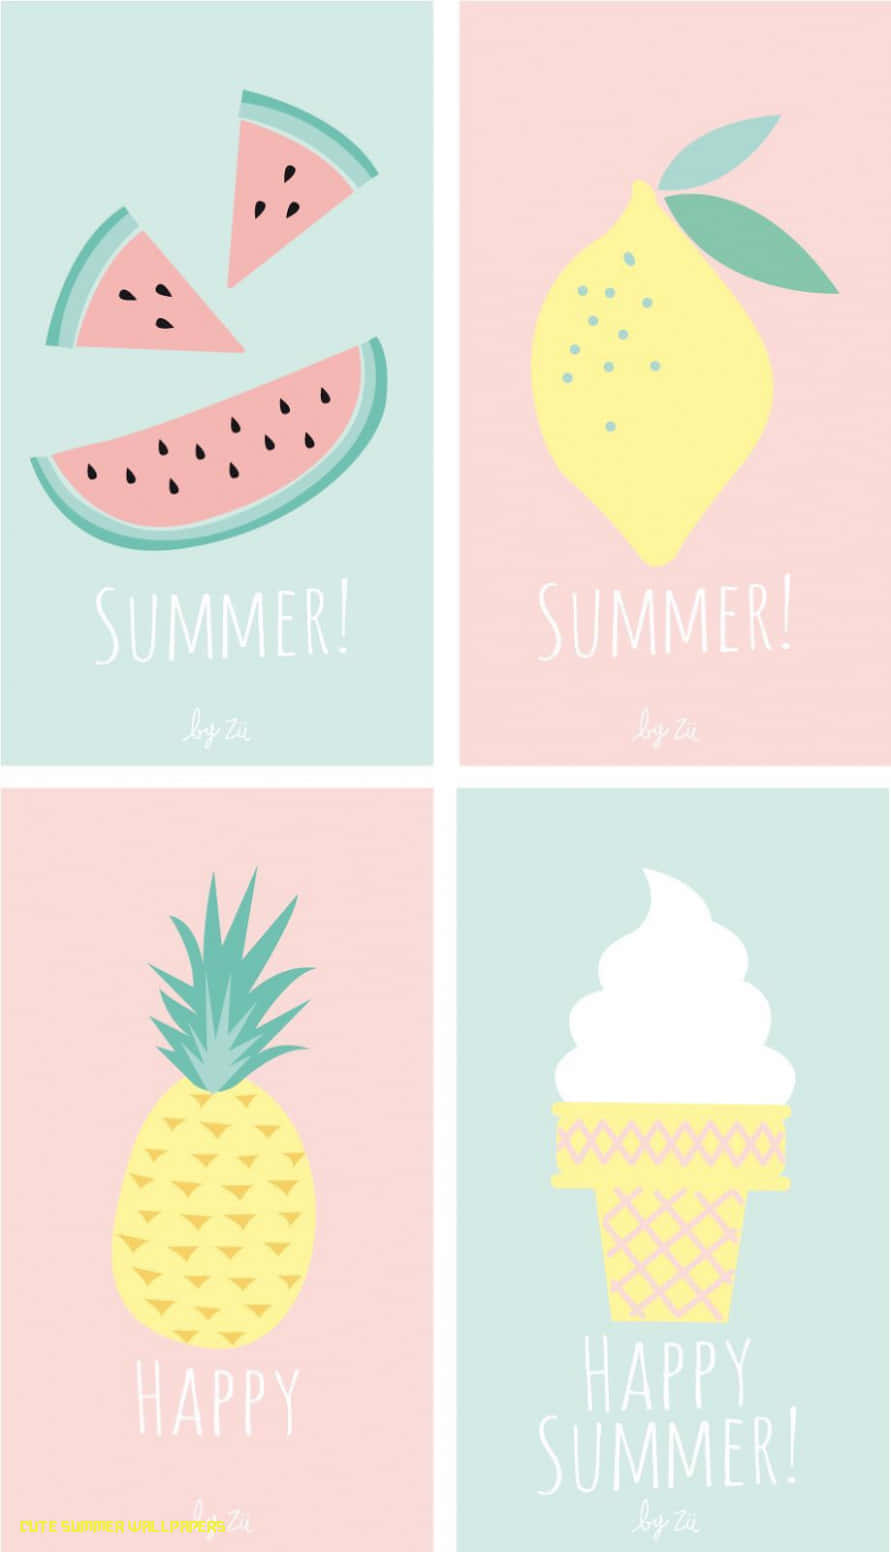 Viersommerliche Prints Mit Früchten Und Eiscreme Wallpaper